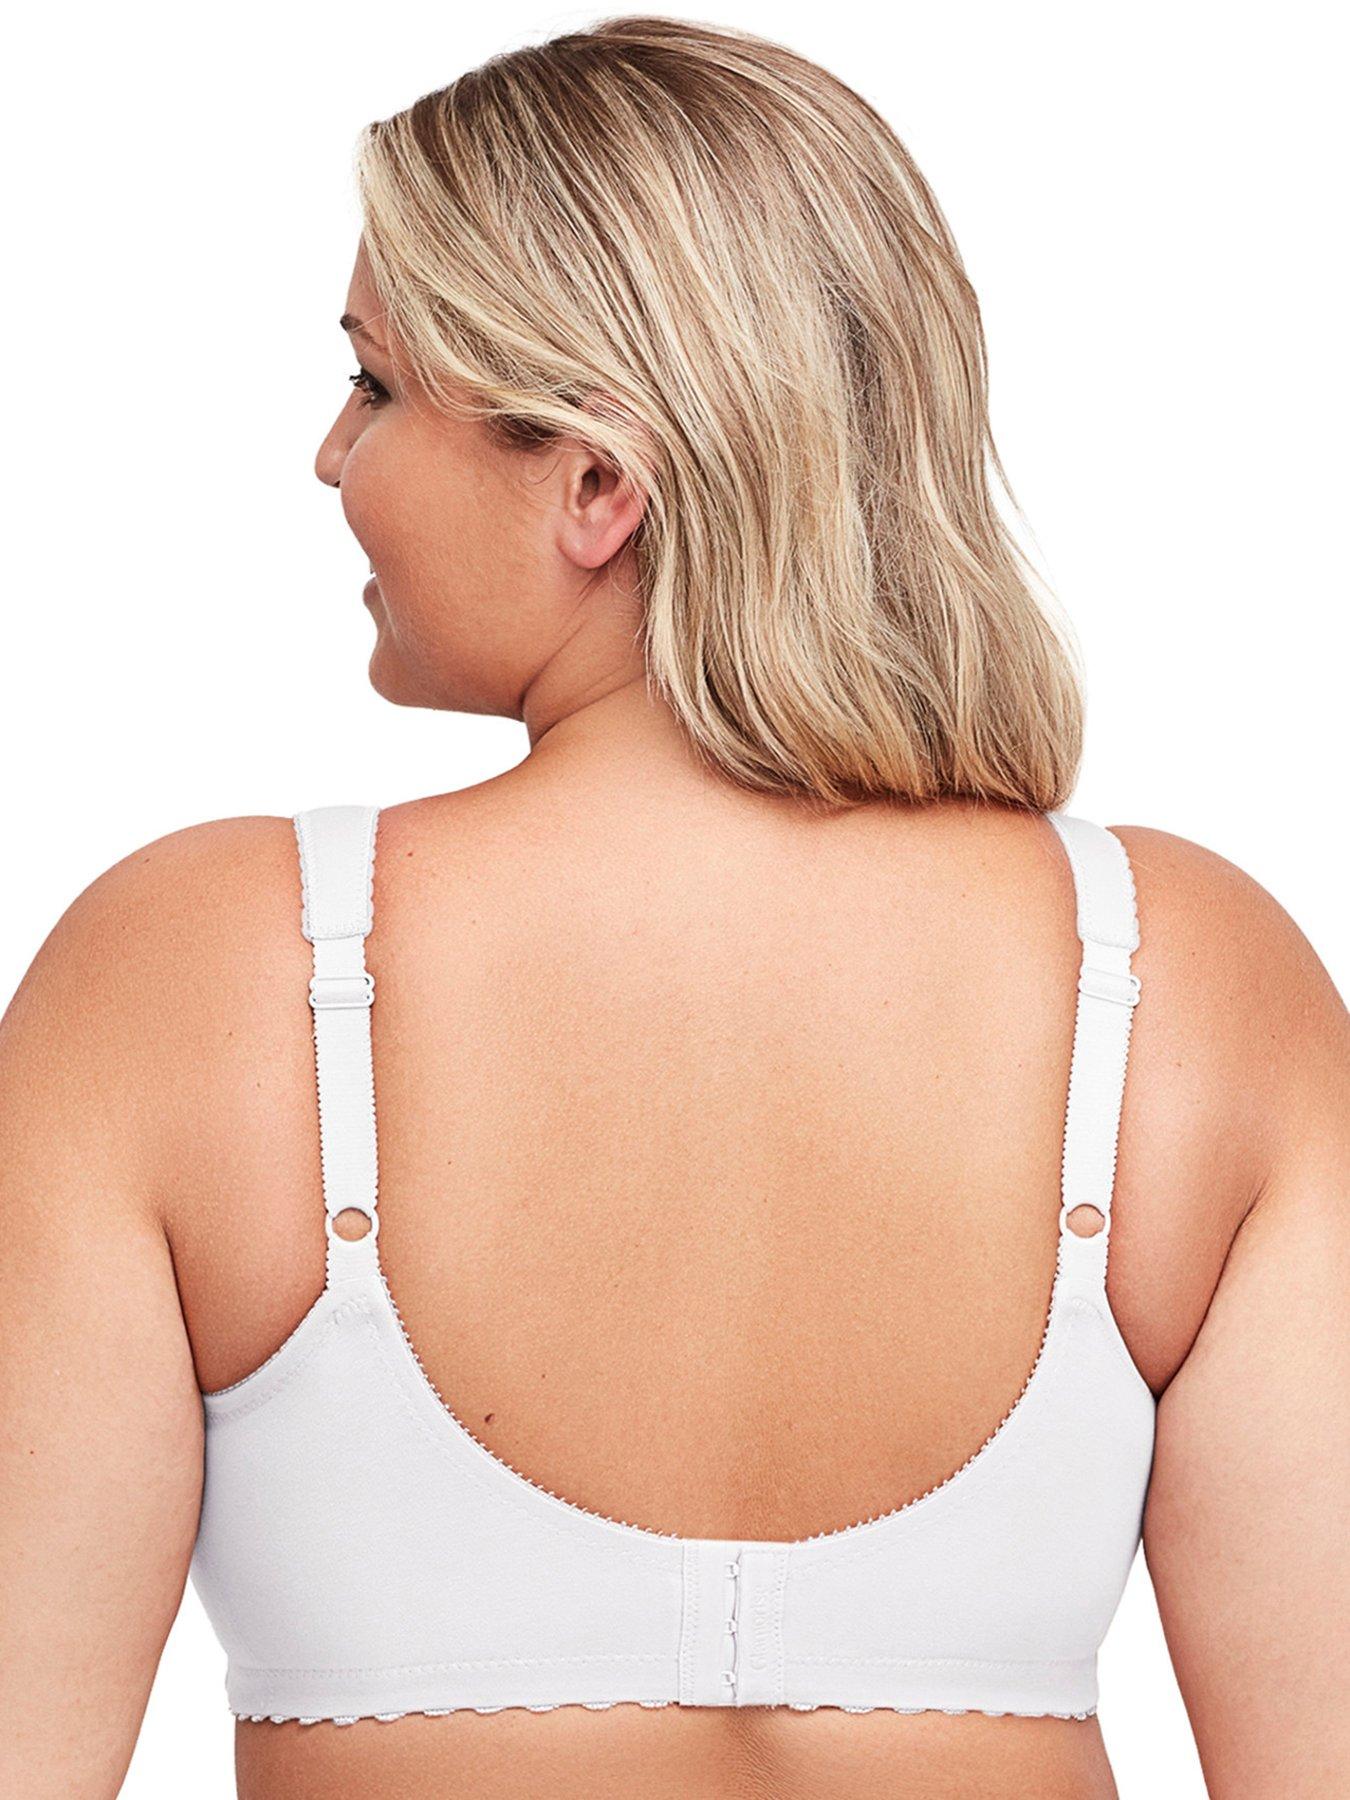 Buy Glamorise Women's Cotton Full Figure Support Bra - Plus,White